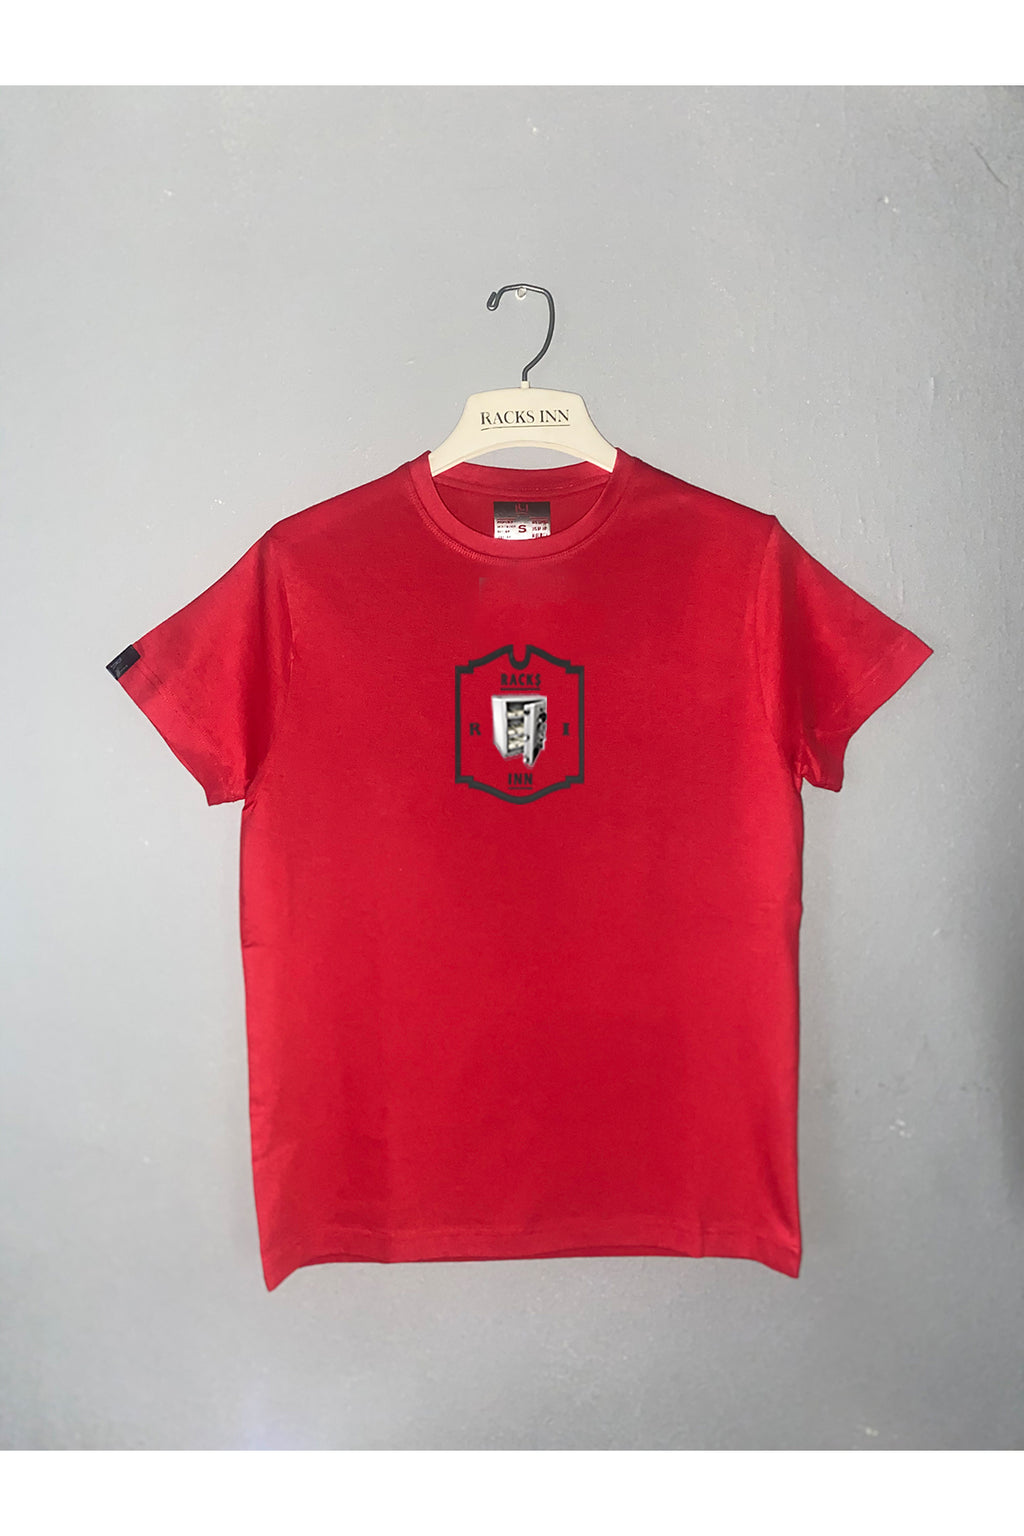 Kids Money Vault T-Shirt - Red